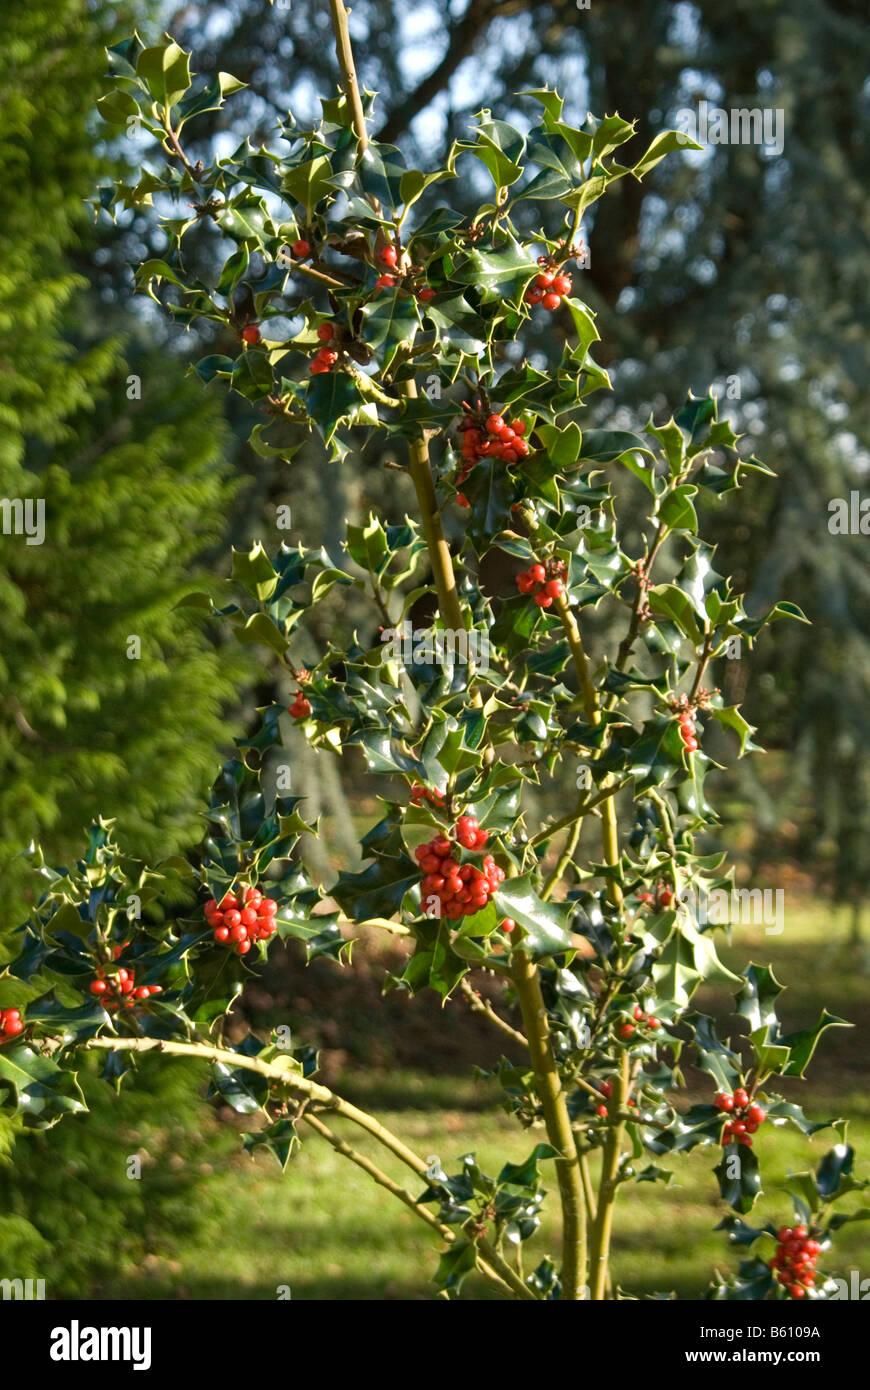 Una immagine di una holly tree crescendo un sacco di bacche rosse di agrifoglio rami in autunno in una giornata di sole Foto Stock